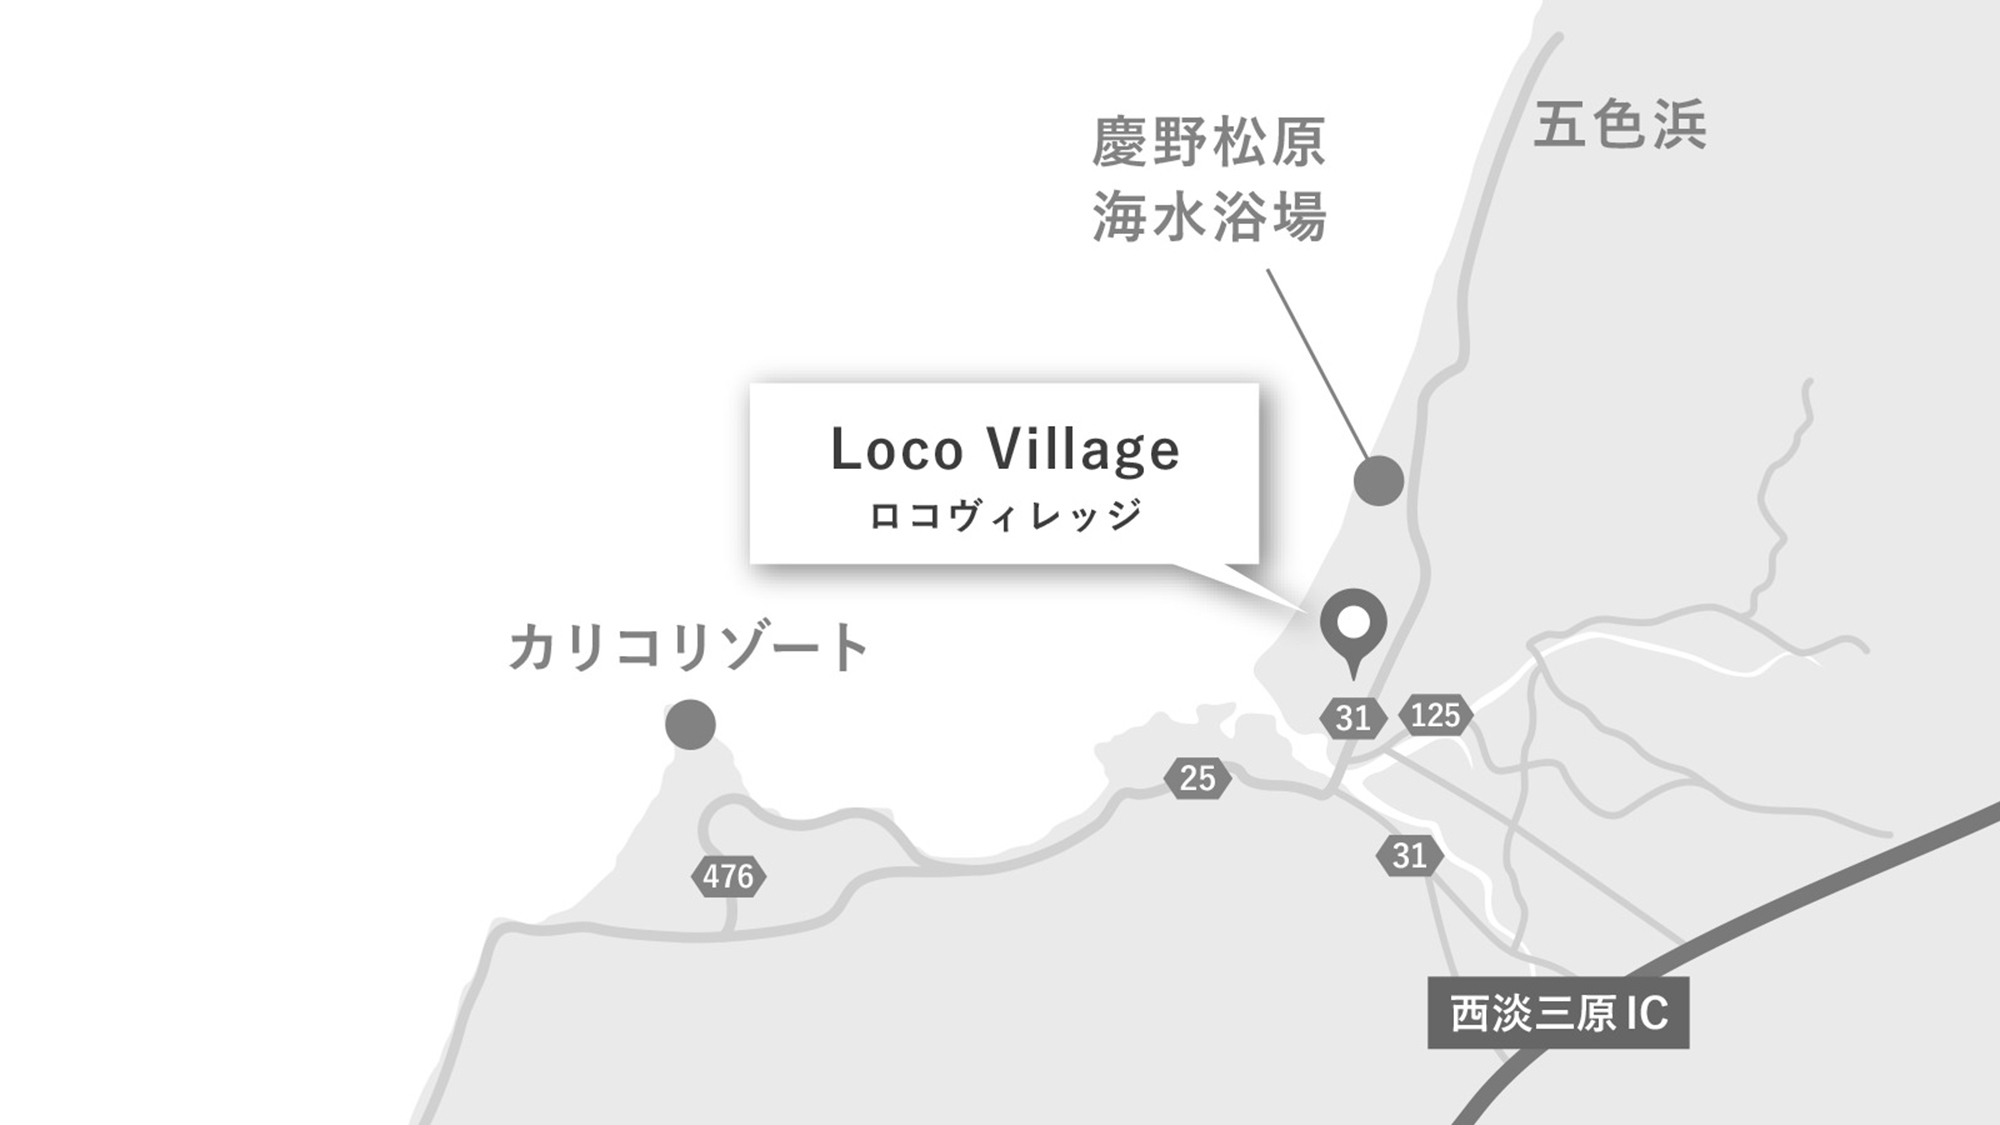 ・慶野松原海水浴場のすぐ近くにございます。西淡三原ICより車で約10分。